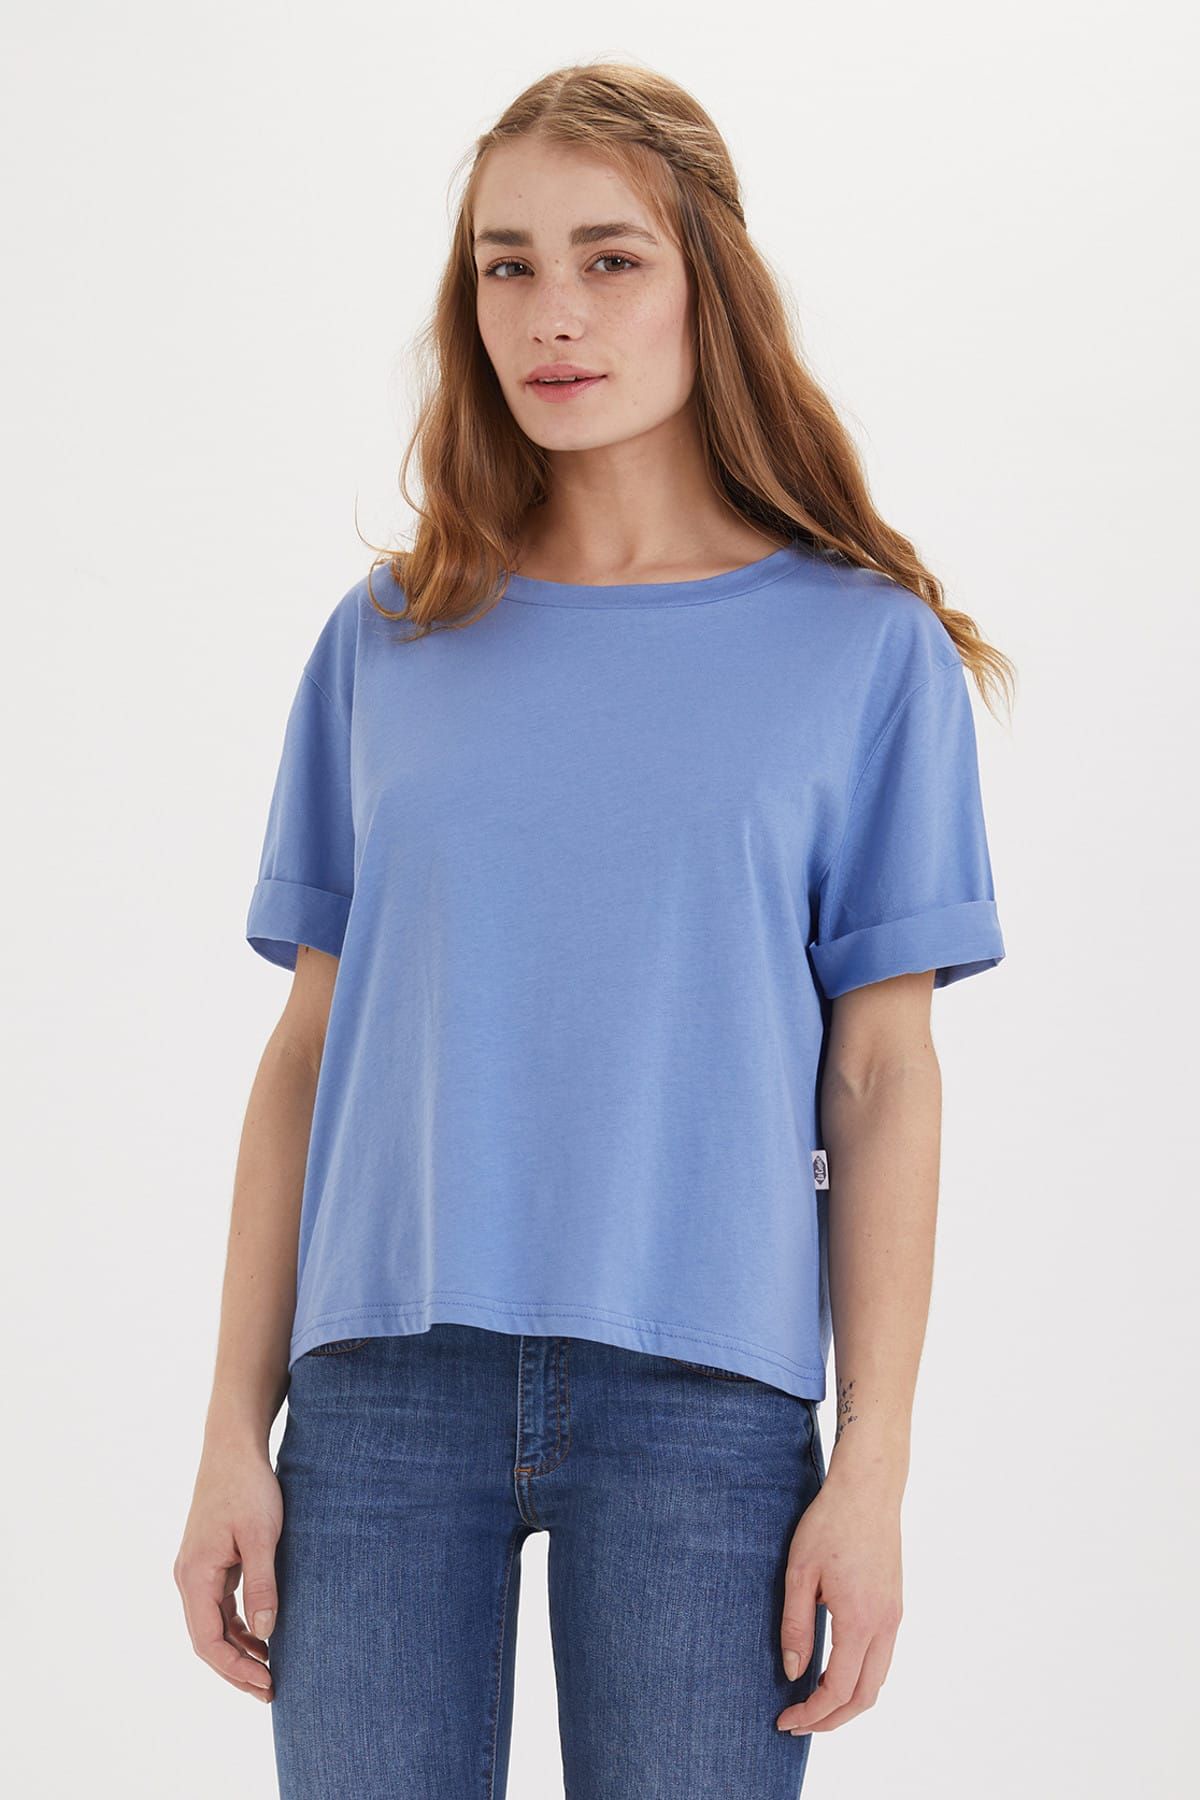 Lee Cooper Kadın Emma O Yaka T-Shirt Mavi 192 LCF 242004